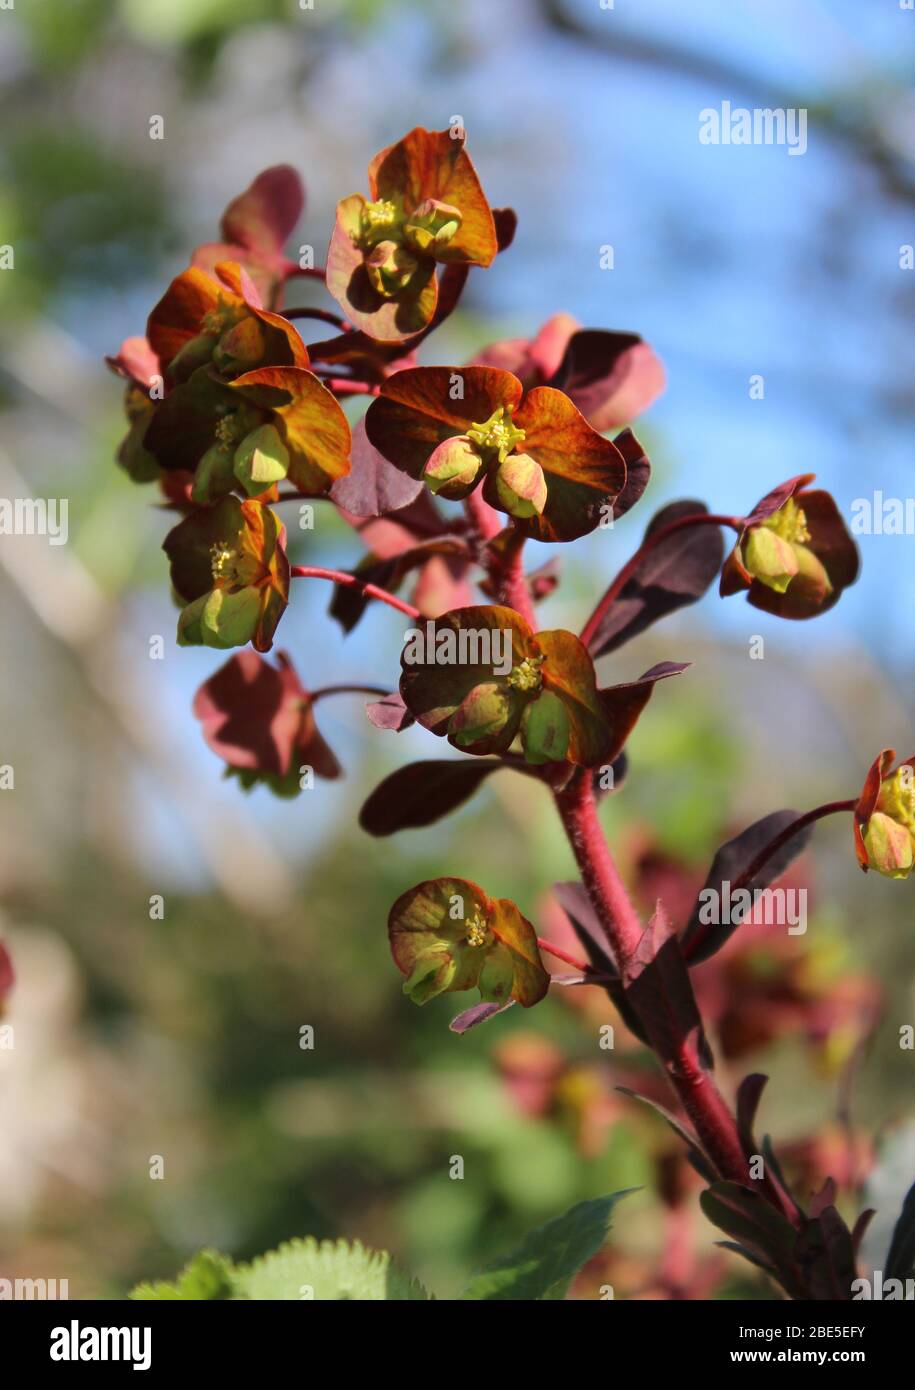 Die ungewöhnlichen grünen Blüten und lila Blätter von Euphorbia amygdaloides purpurea, auch bekannt als lila Holzstrauß. Im Freien in einer natürlichen Umgebung. Stockfoto